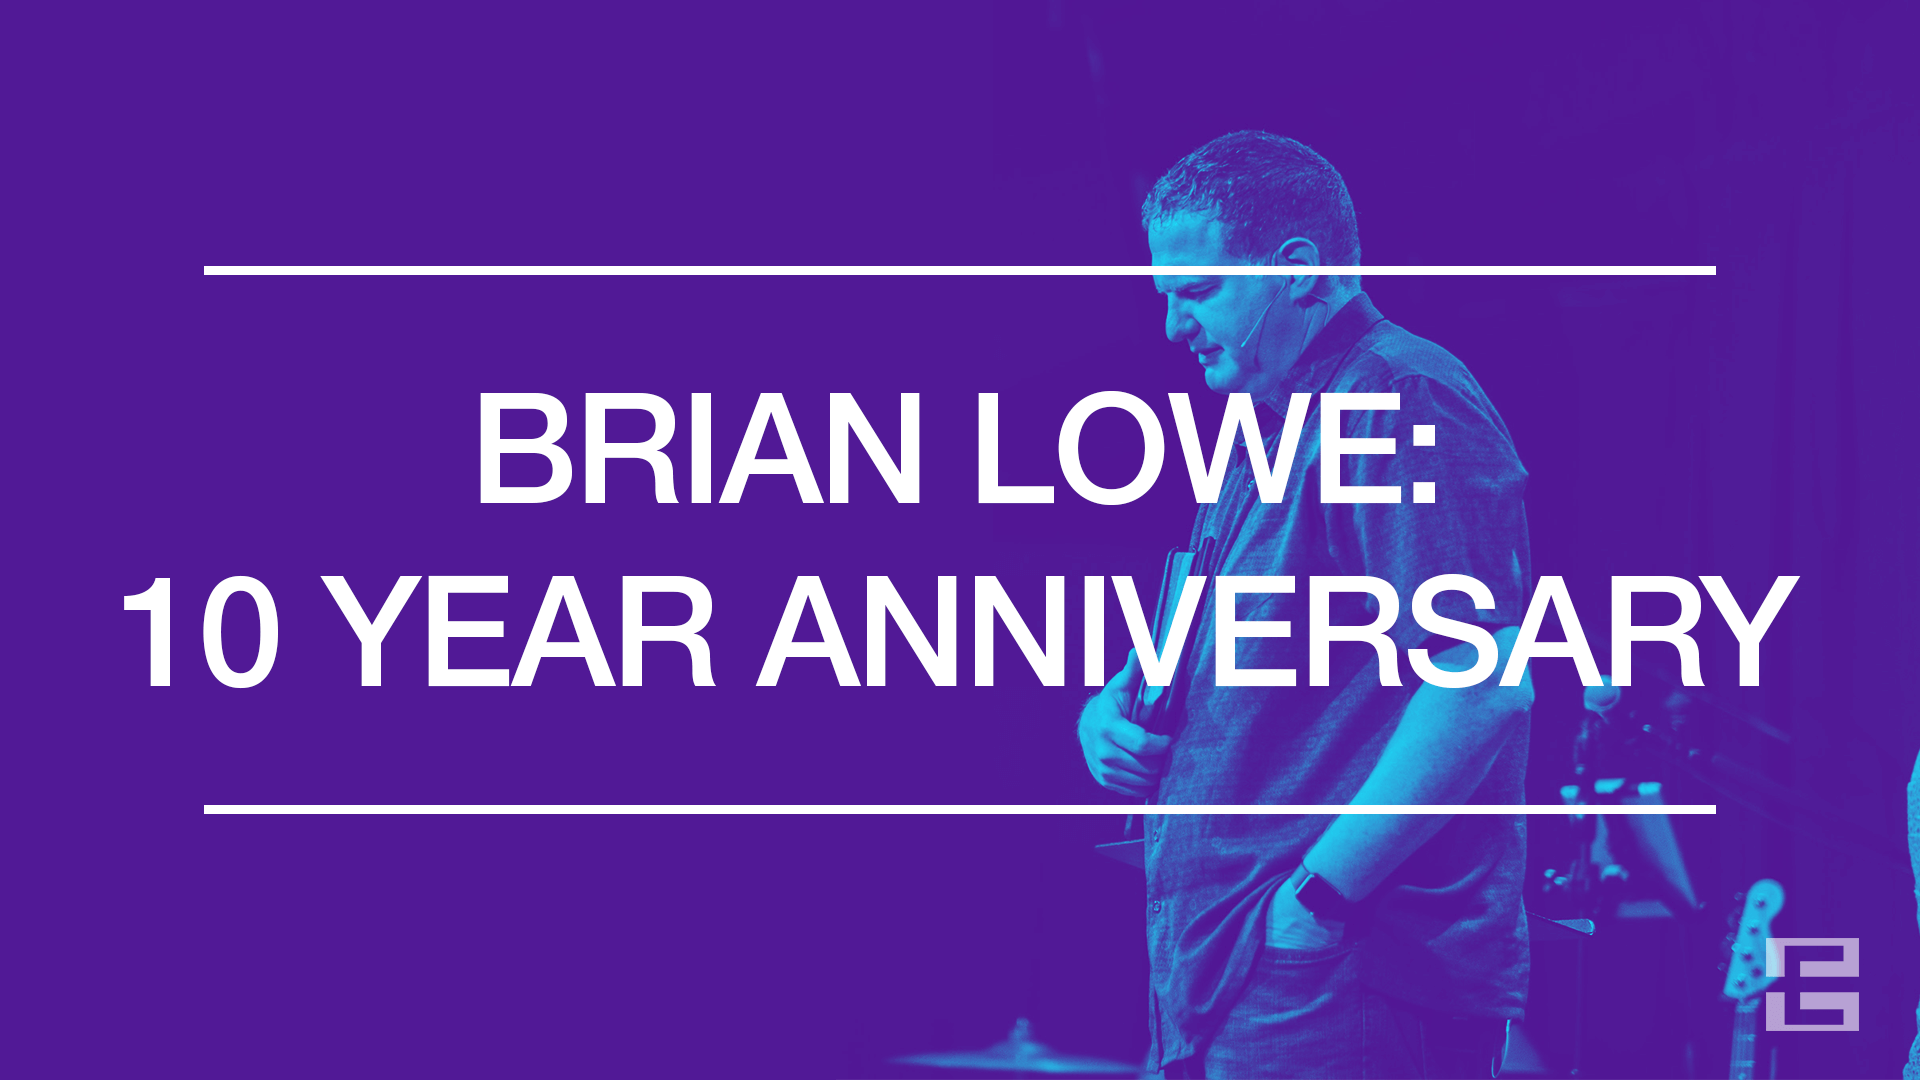 Brian Lowe: 10 Year Anniversary